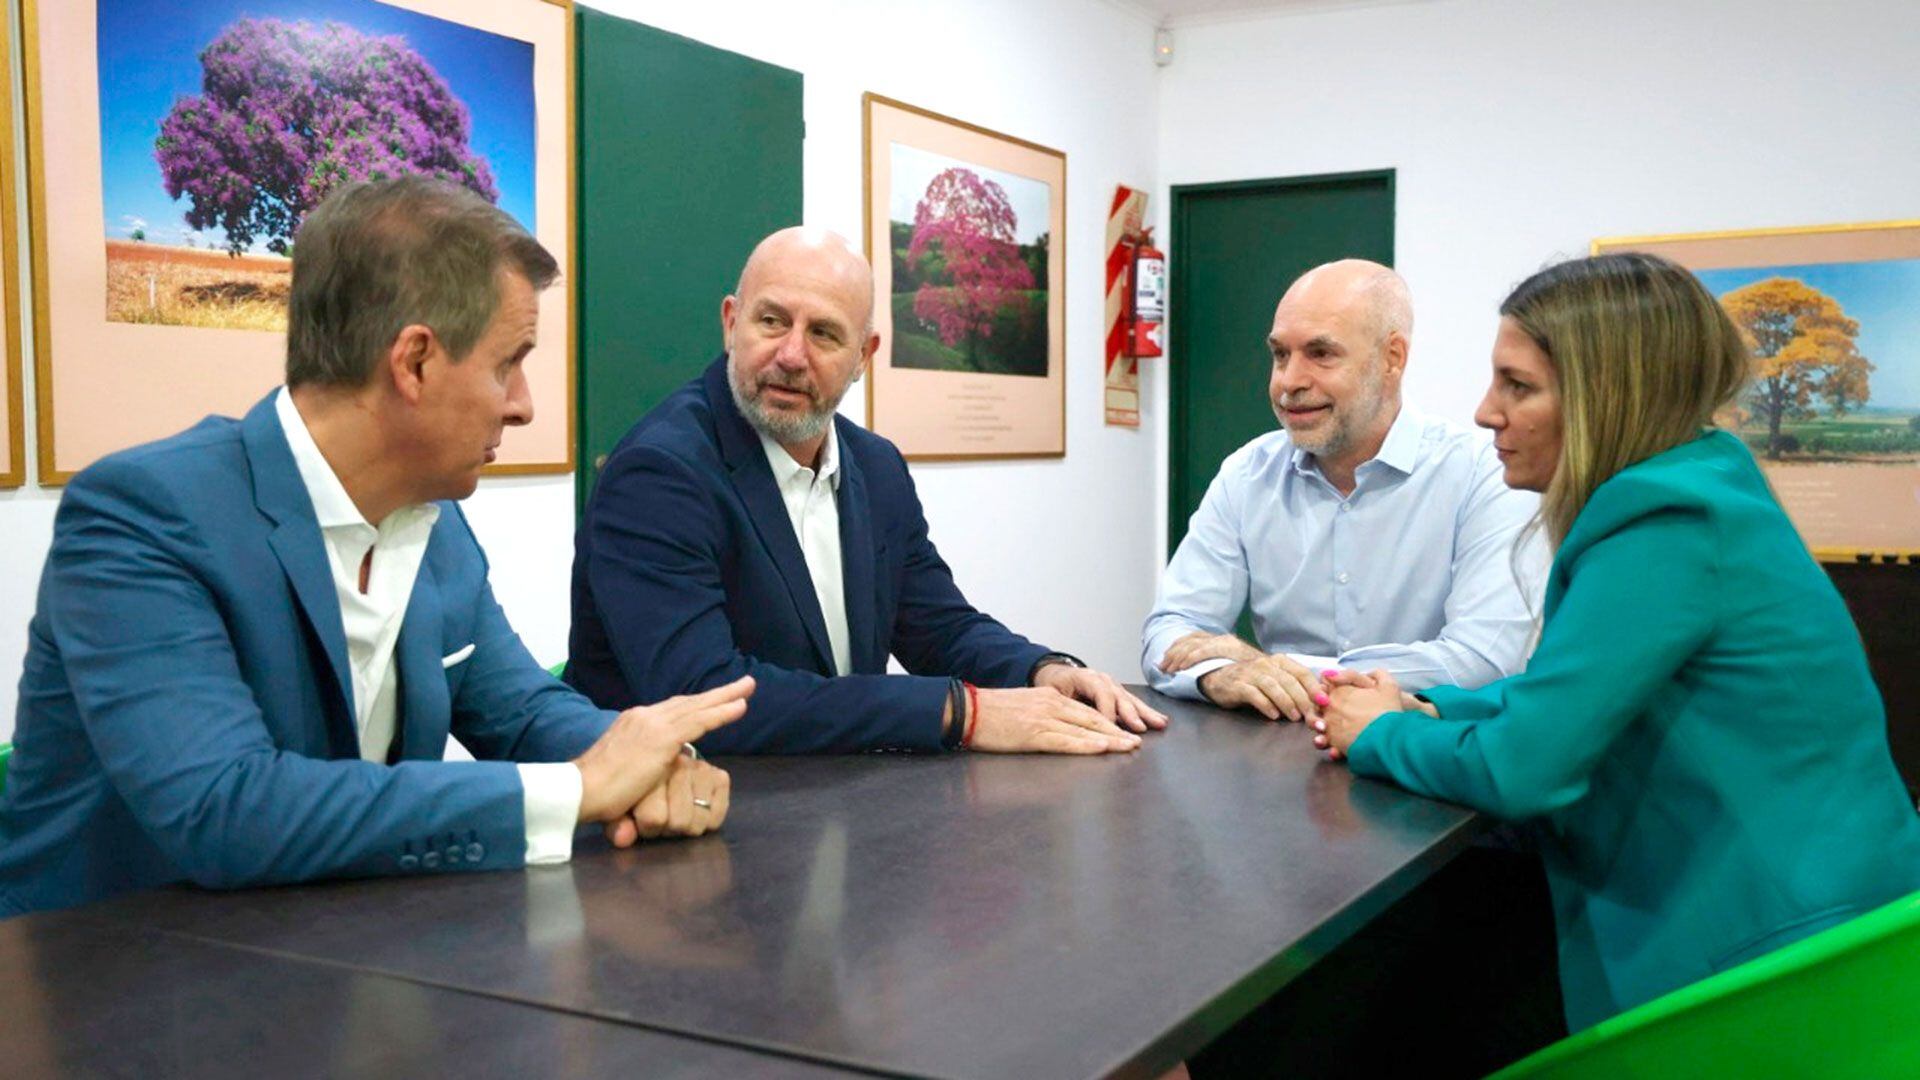 Martín Redrado, Silvia Lospennato y Waldo Wolff junto a Larreta